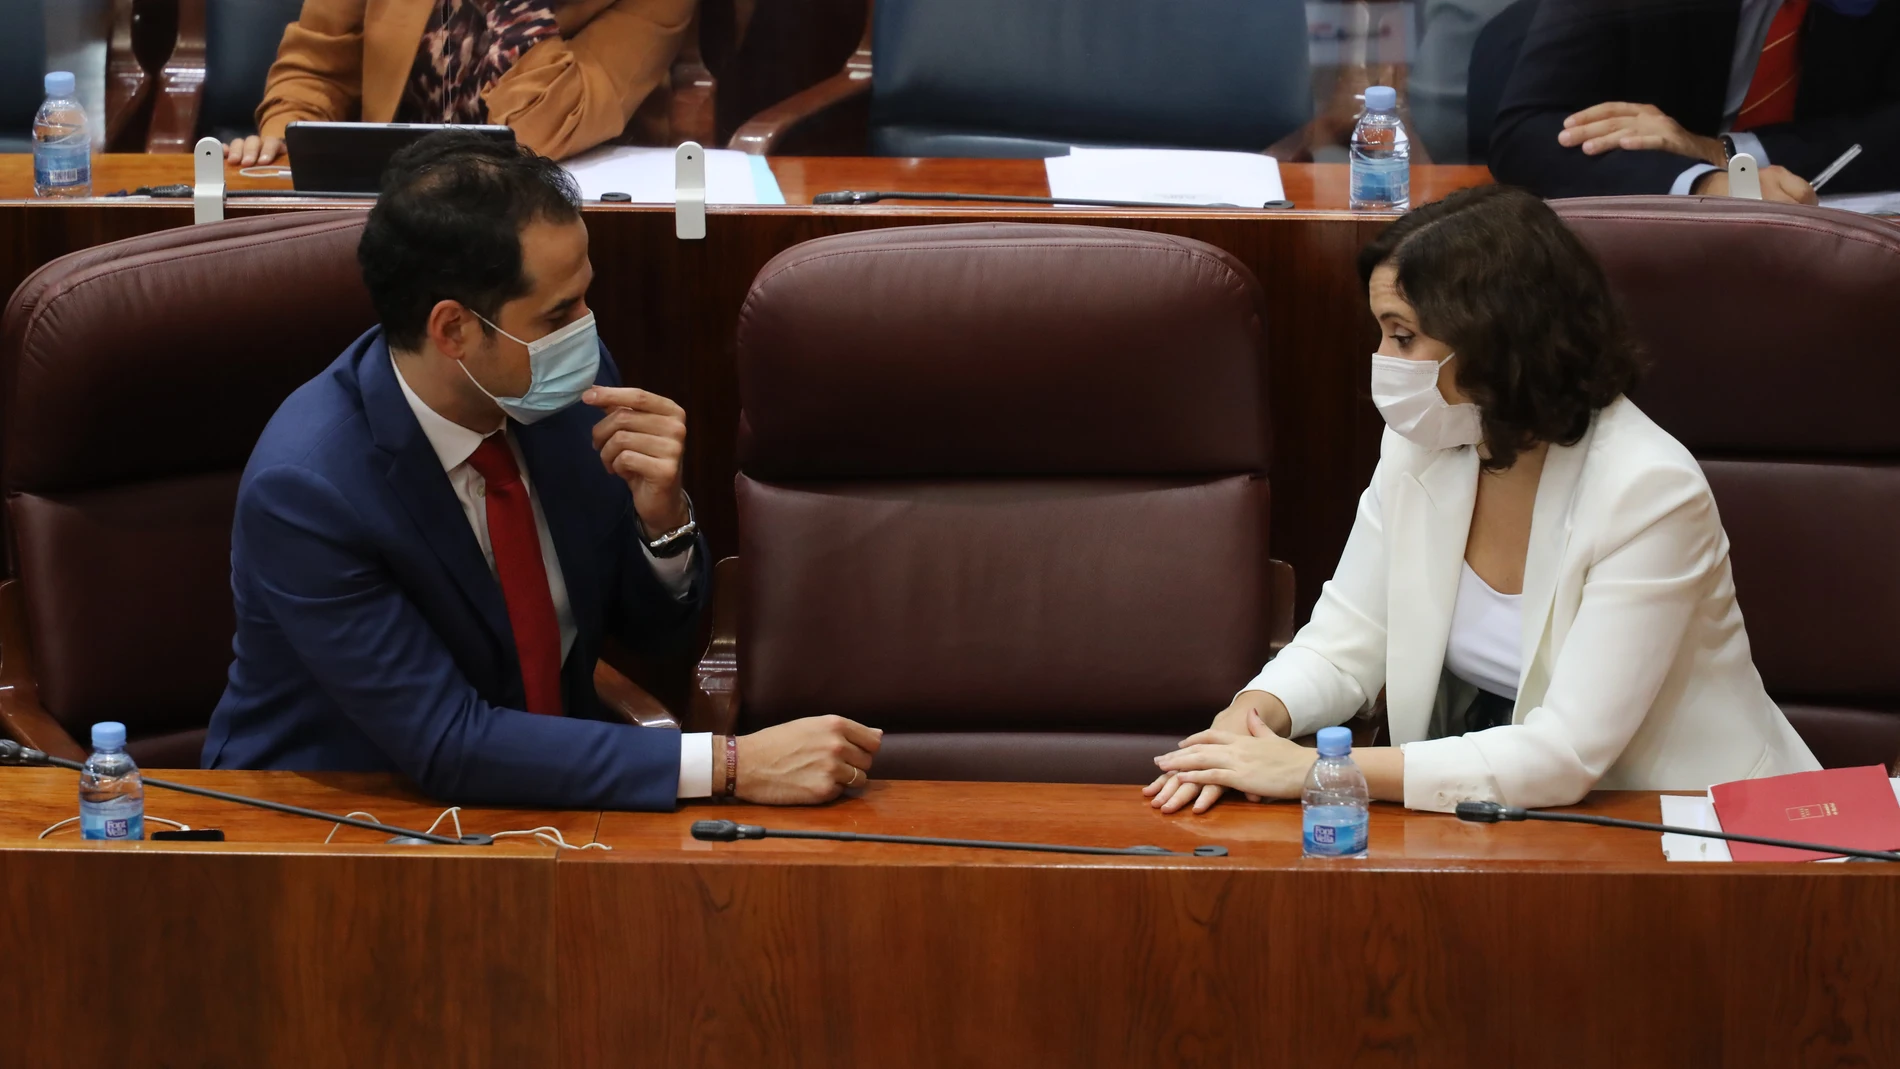 La presidenta de la Comunidad de Madrid, Isabel Díaz Ayuso, y su vicepresidente, Ignacio Aguado (Ciudadanos), durante una sesión en la Asamblea de Madrid la semana pasada